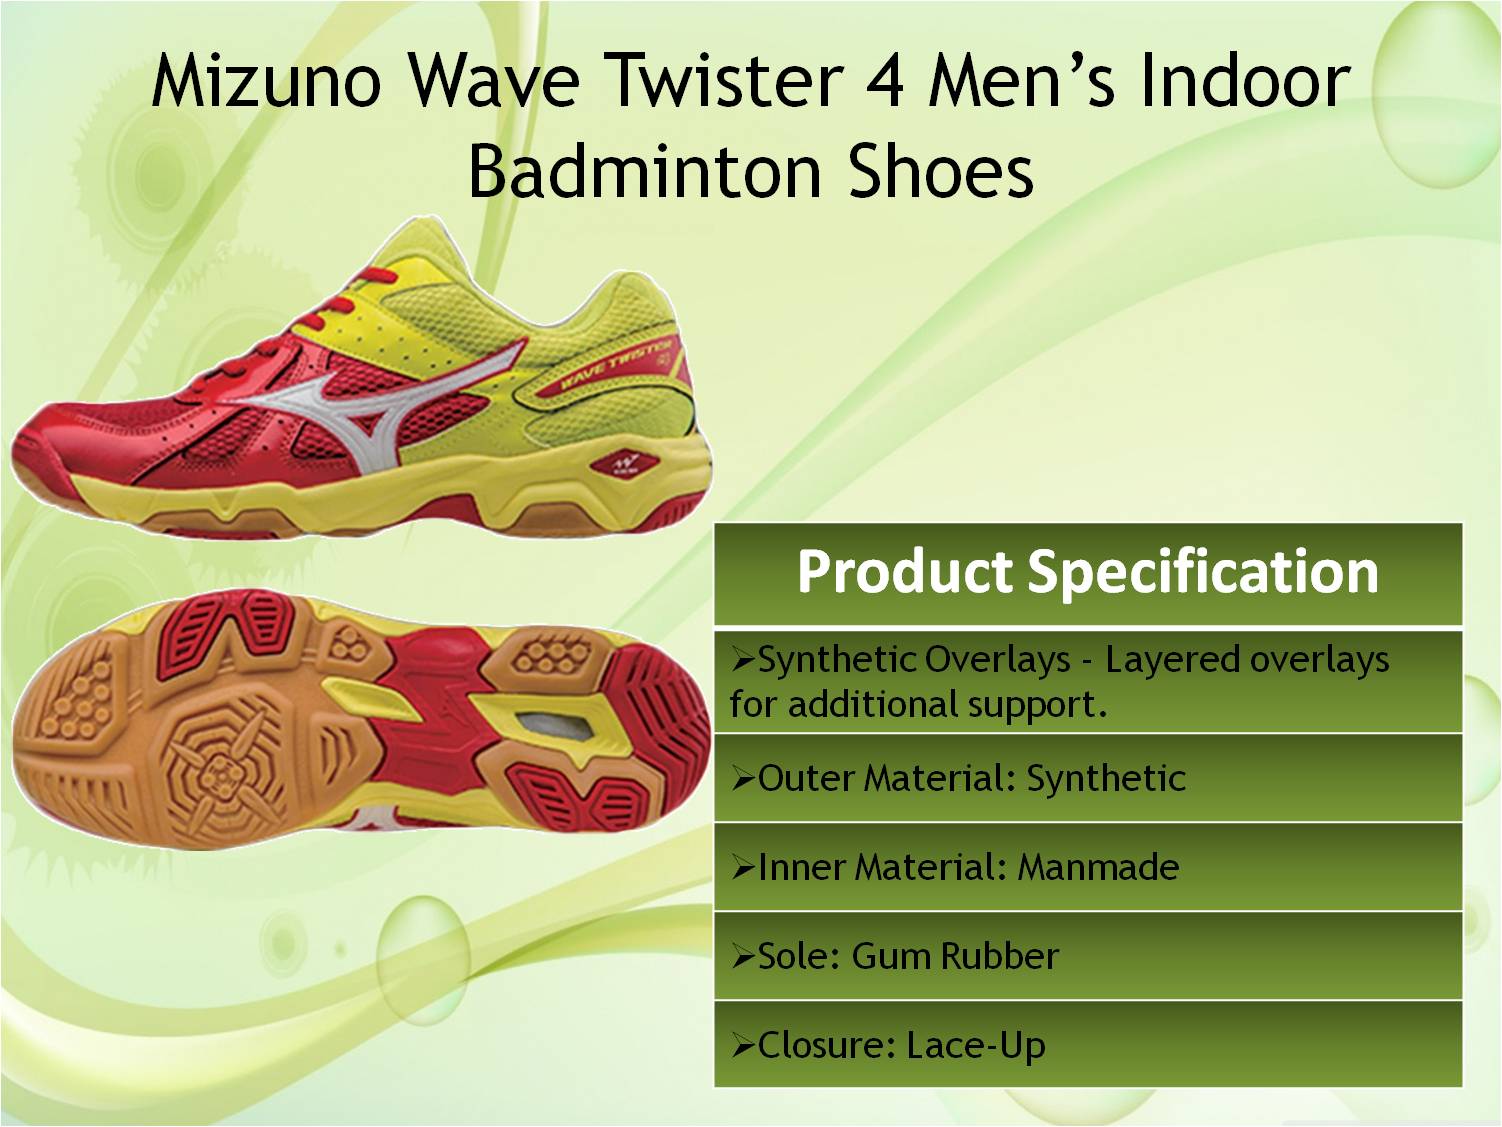 mizuno wave twister 4 badminton